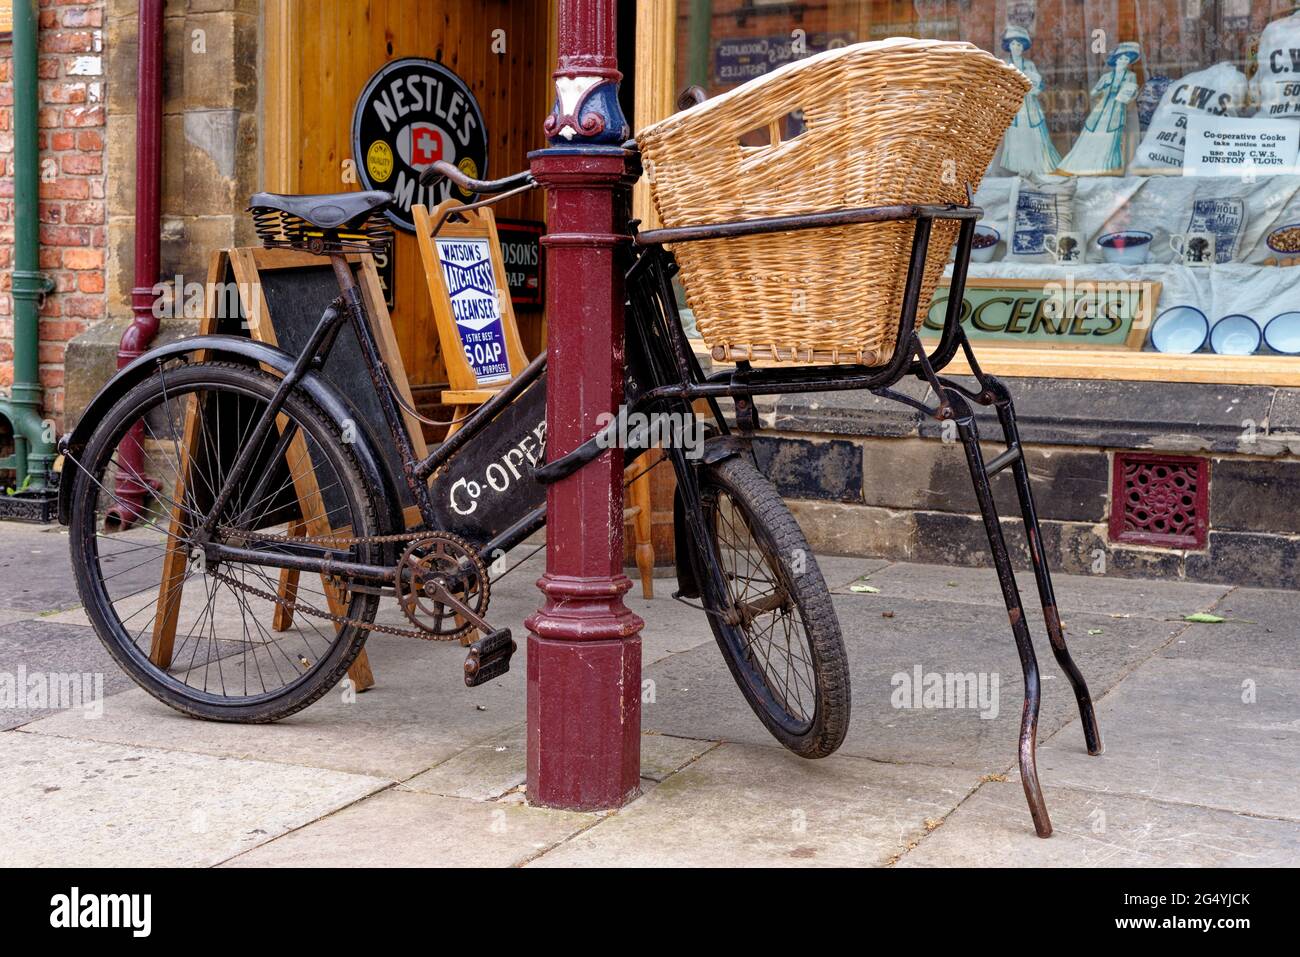 Parc à vélos en face d'une boutique sur High Street dans la ville de Beamish Village des années 1900, comté de Durham, Angleterre, Royaume-Uni, 12 juin 2021 Banque D'Images